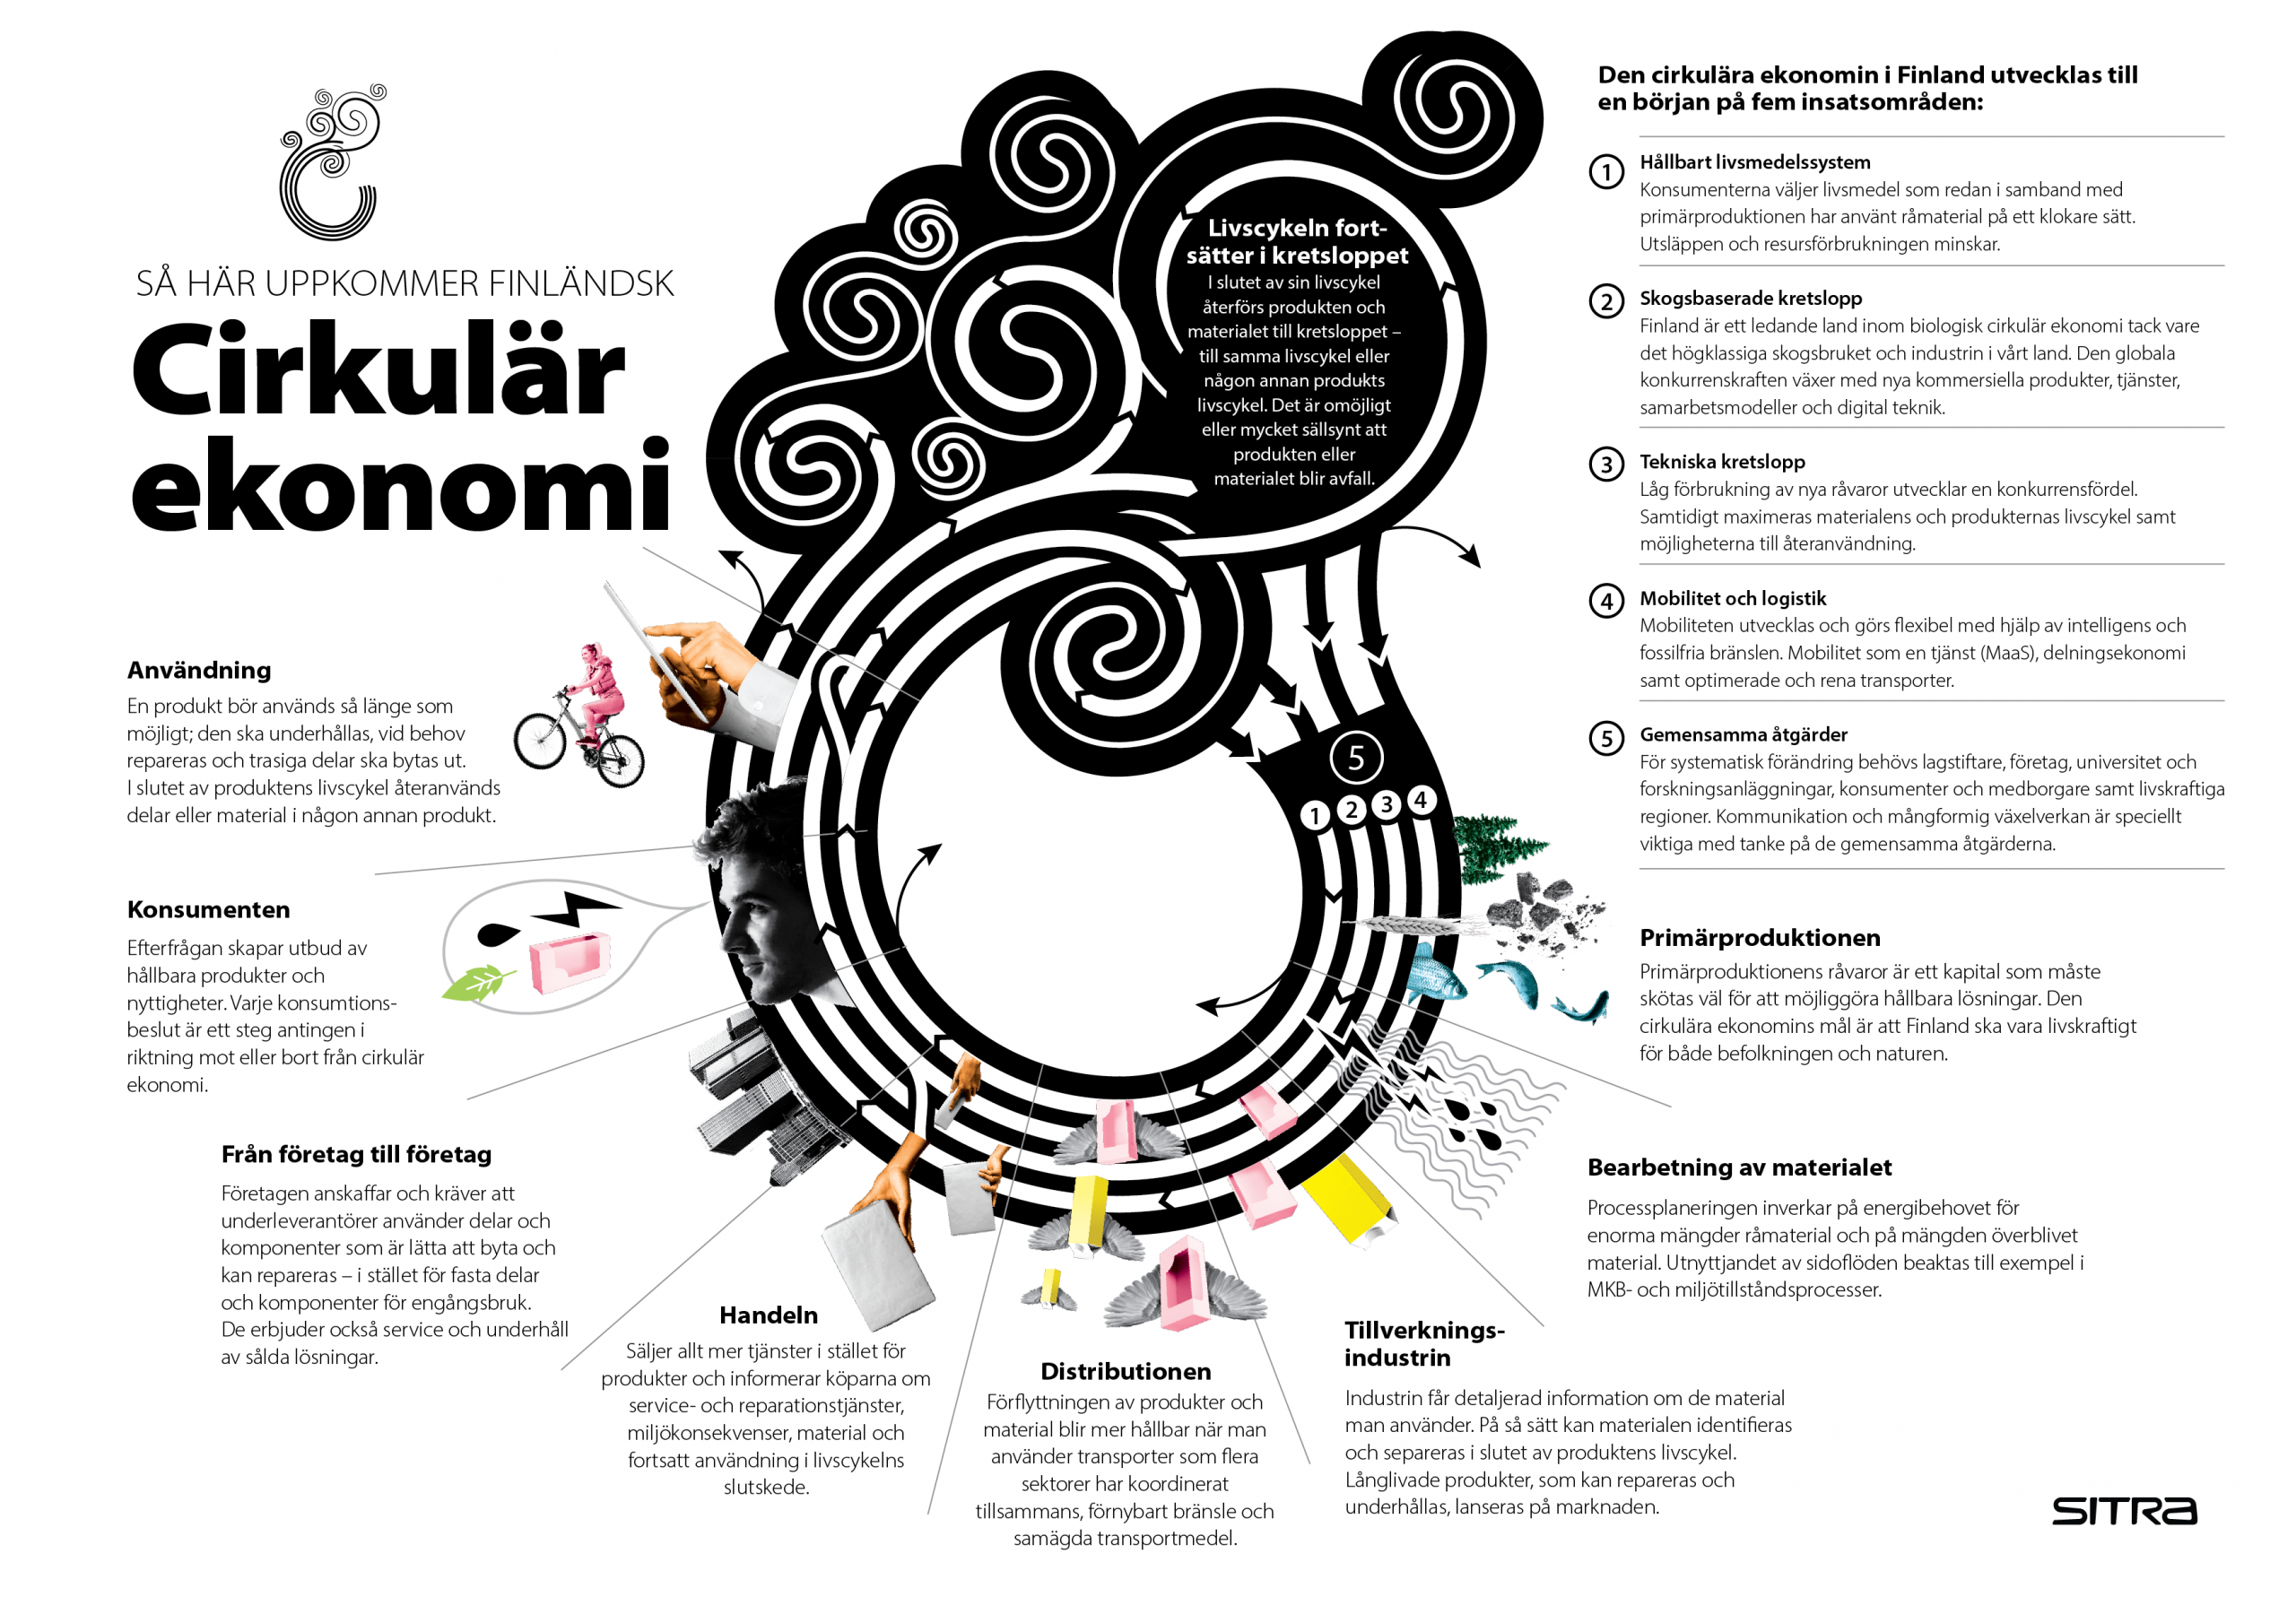 Slik ser sirkulær økonomi ut i Finland. Innovasjonsfondet Sitra har identifisert fem innsatsområder.